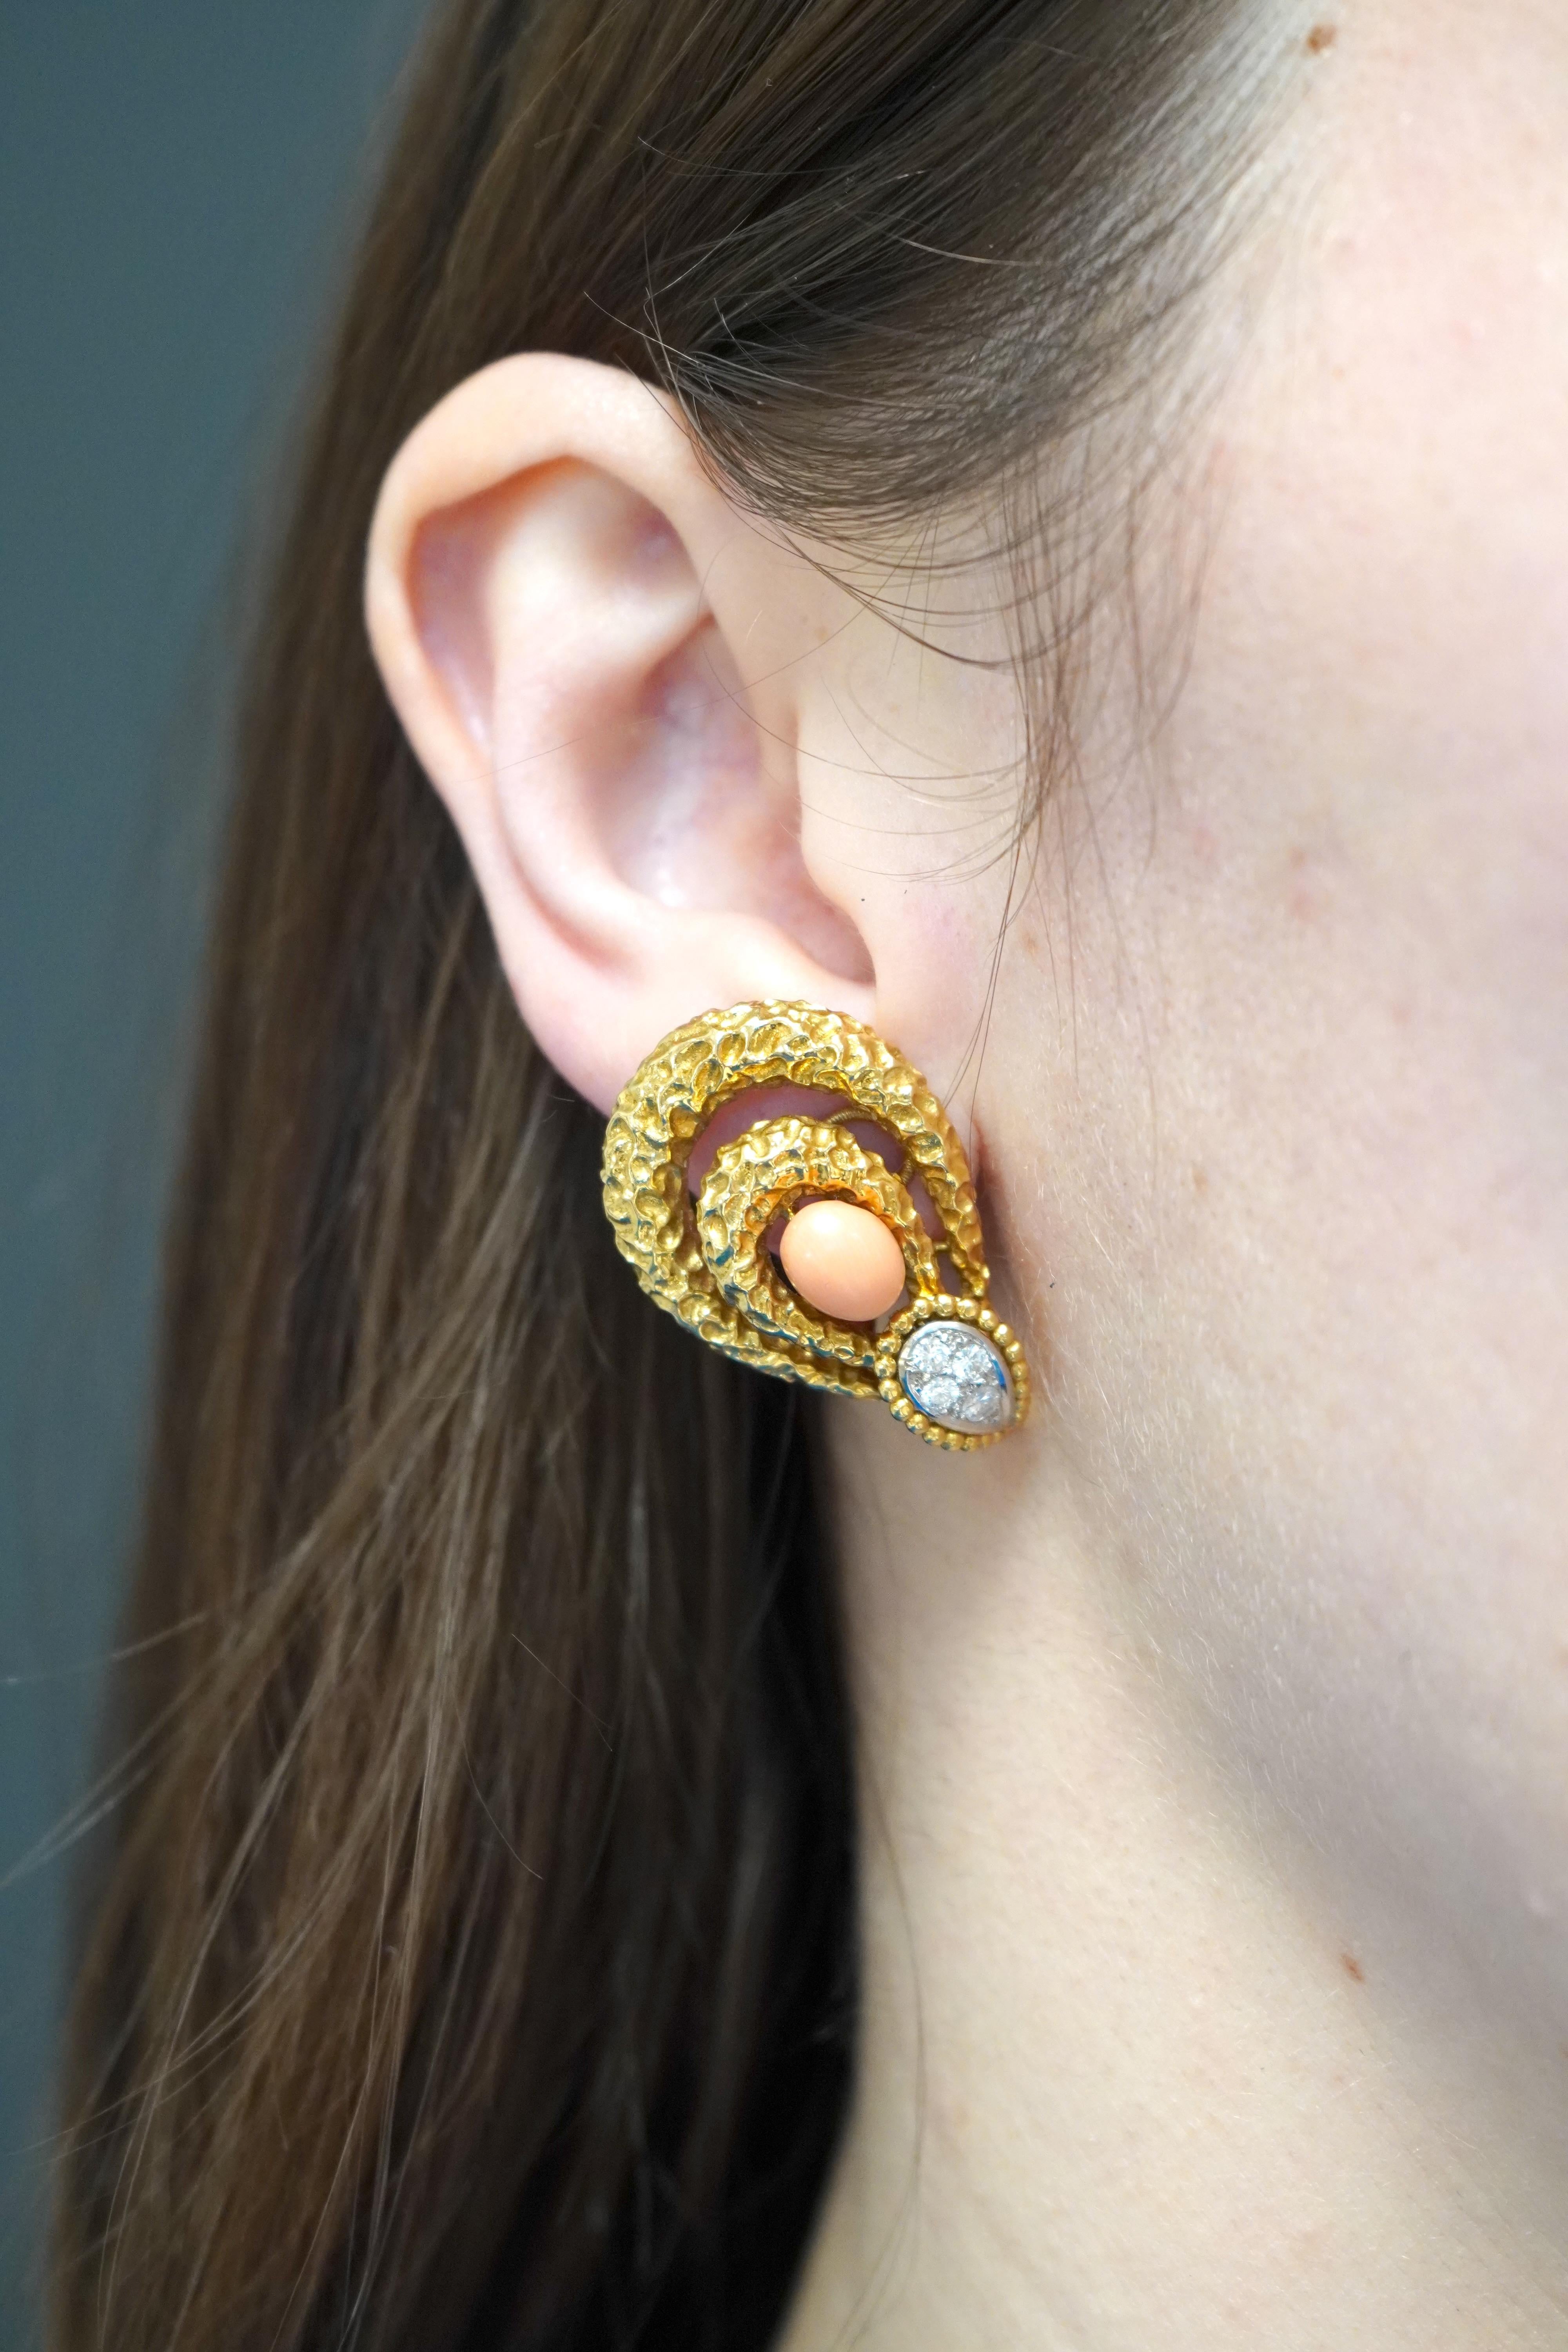 Mauboussin Paris 18k gehämmert Gold Diamant Korallen Ohrringe. Dieses schöne Paar Ohrringe zum Anstecken stammt aus den 1970er Jahren und wiegt 25,2 Gramm. Sie enthalten insgesamt 8 moderne Diamanten im Brillantschliff und 2 Cabochon-Steine aus